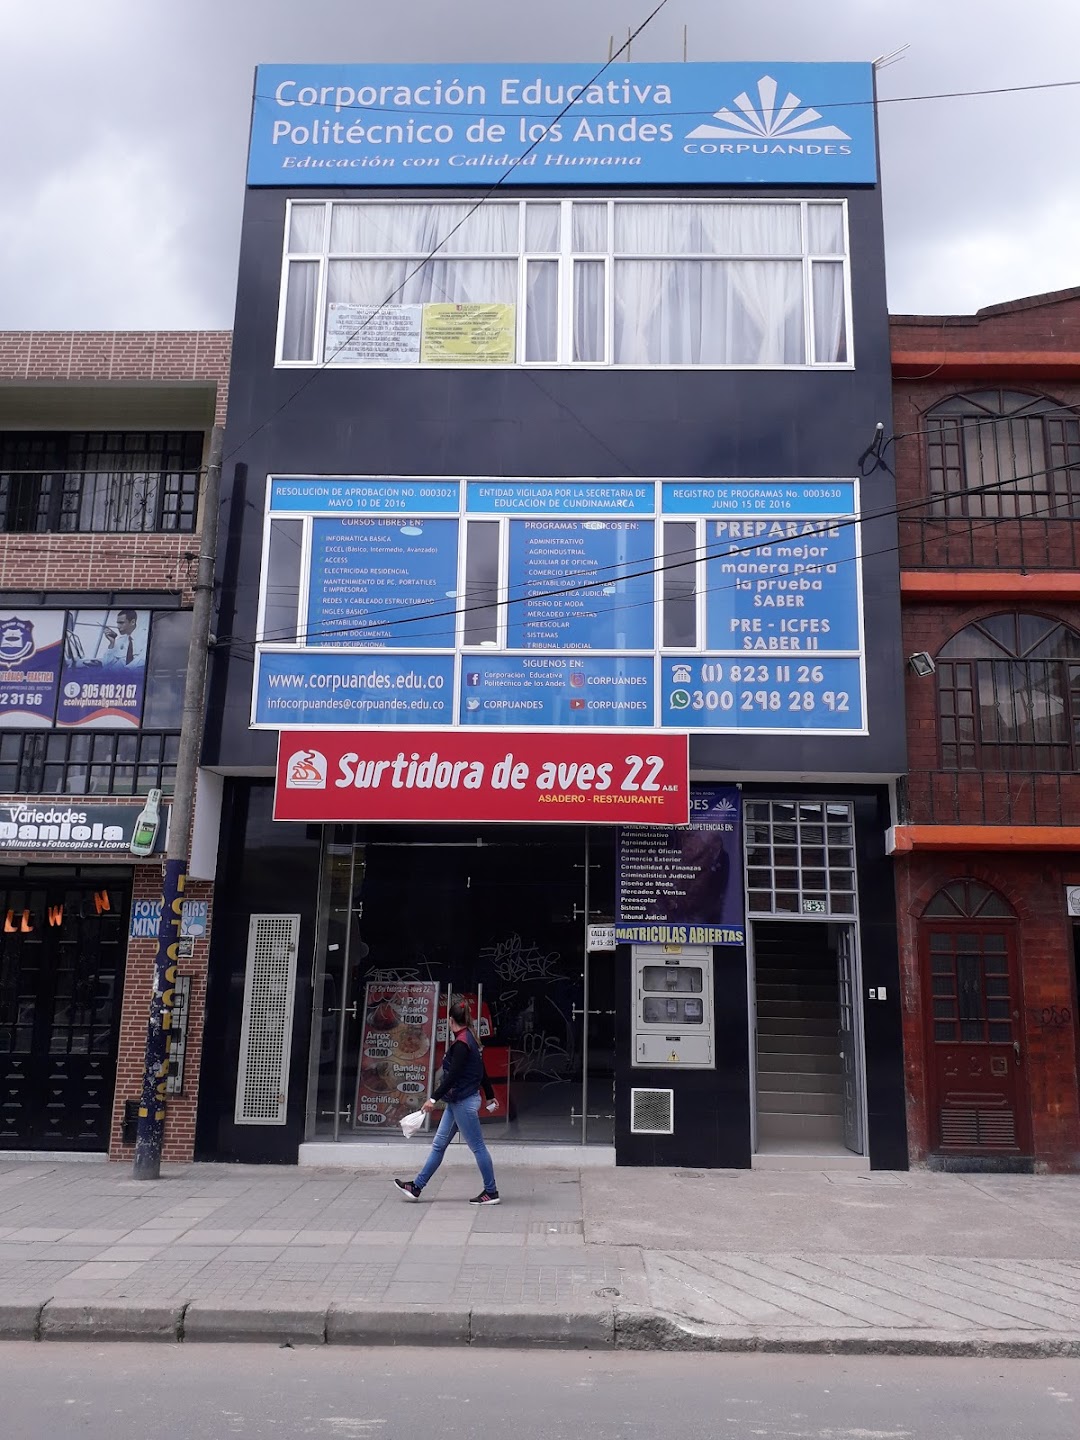 Corporacion Educativa Politecnico de los Andes, CORPUANDES